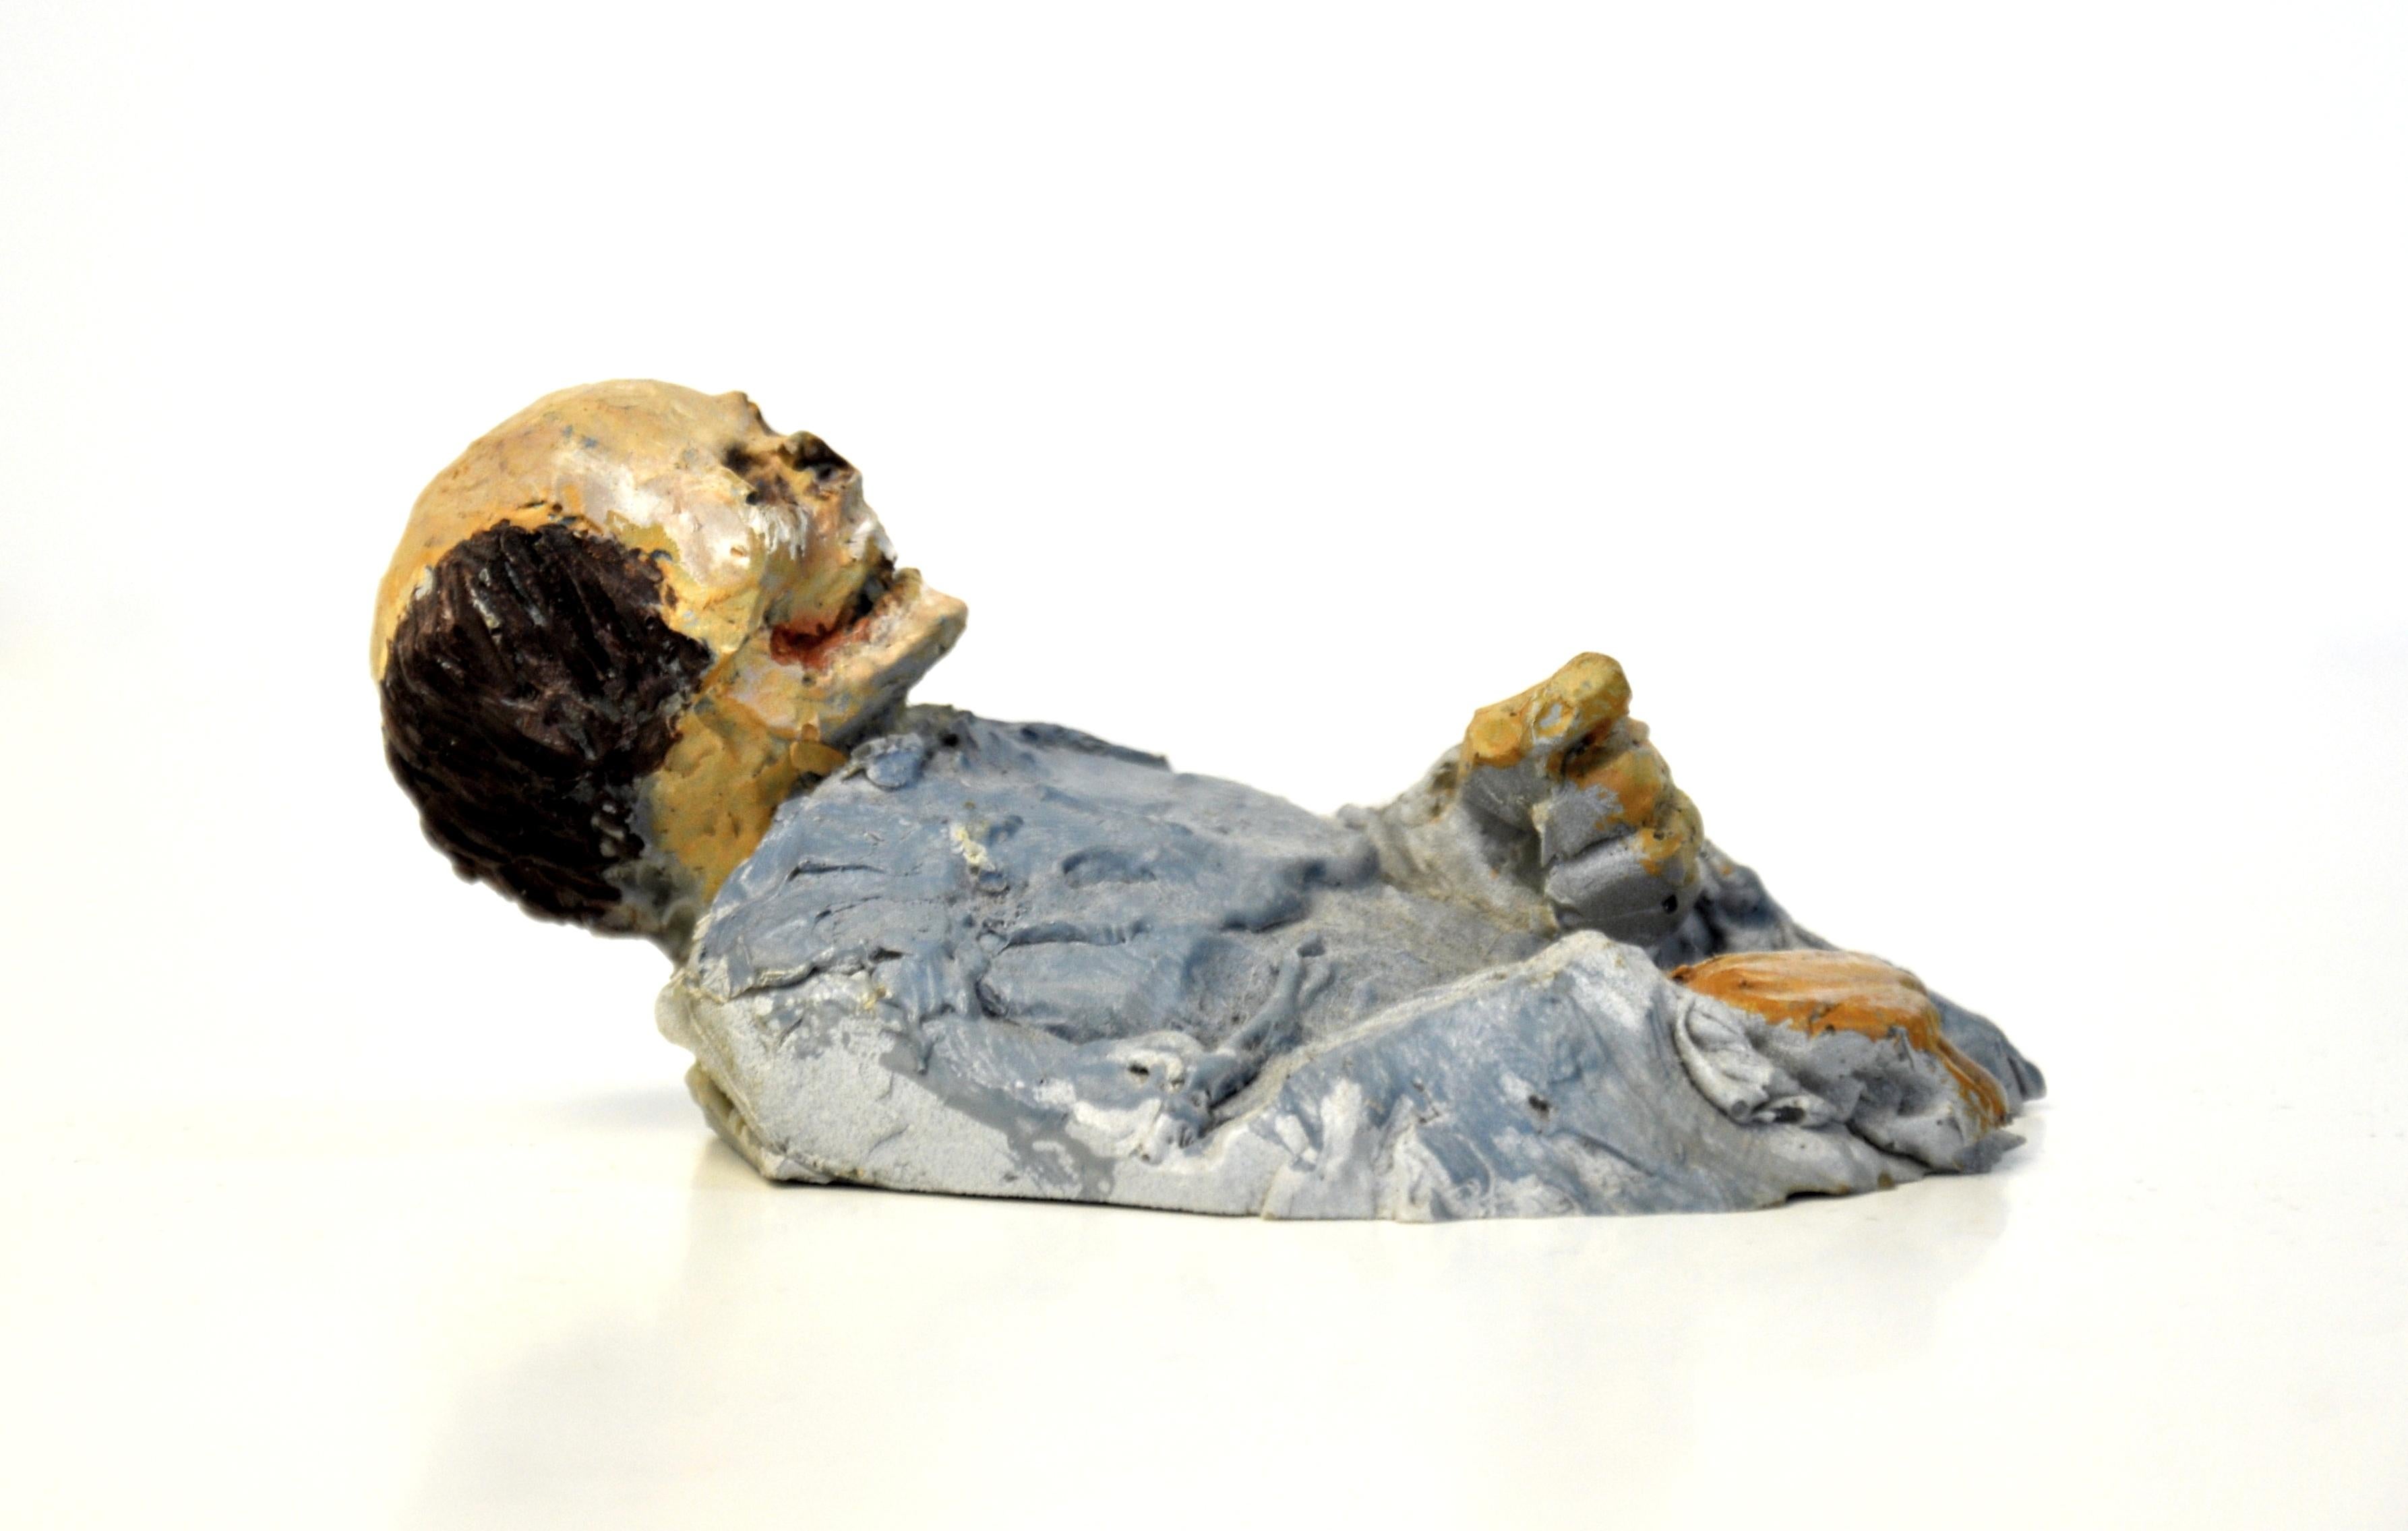 Une sculpture de squelette de zombie en résine réalisée par Isaac Cordal, un sculpteur espagnol contemporain basé à Bruxelles, issue de l'exposition Urban Inertia, intitulée Viva la Muerte. Le buste semble dépasser de la surface sur laquelle il est